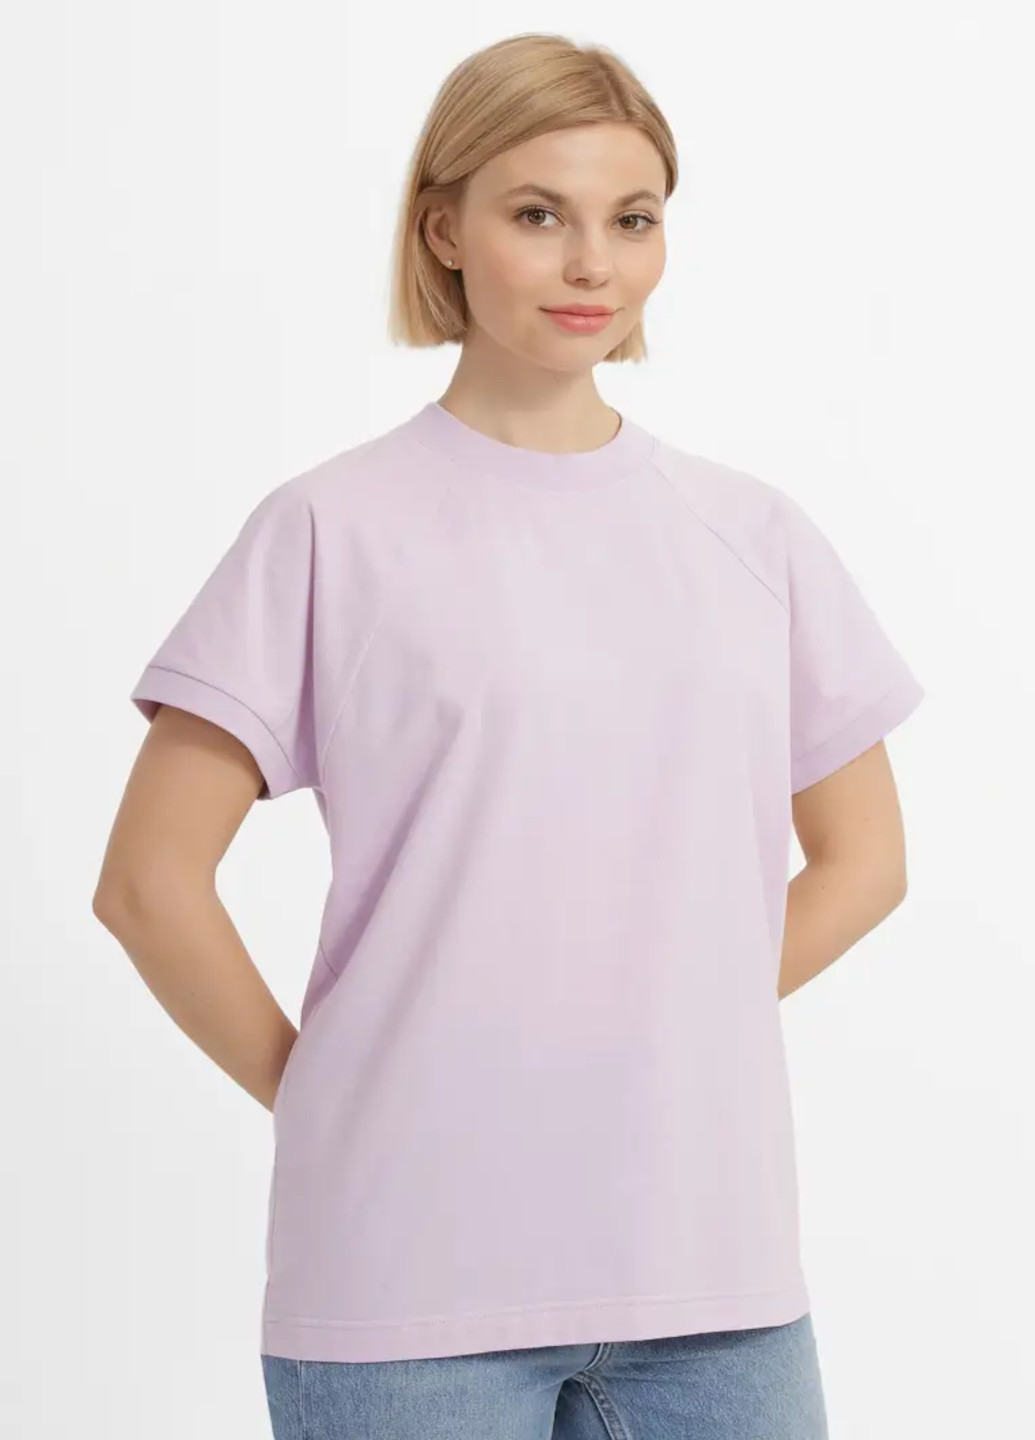 Светло-фиолетовая всесезон футболка женская с коротким рукавом Роза